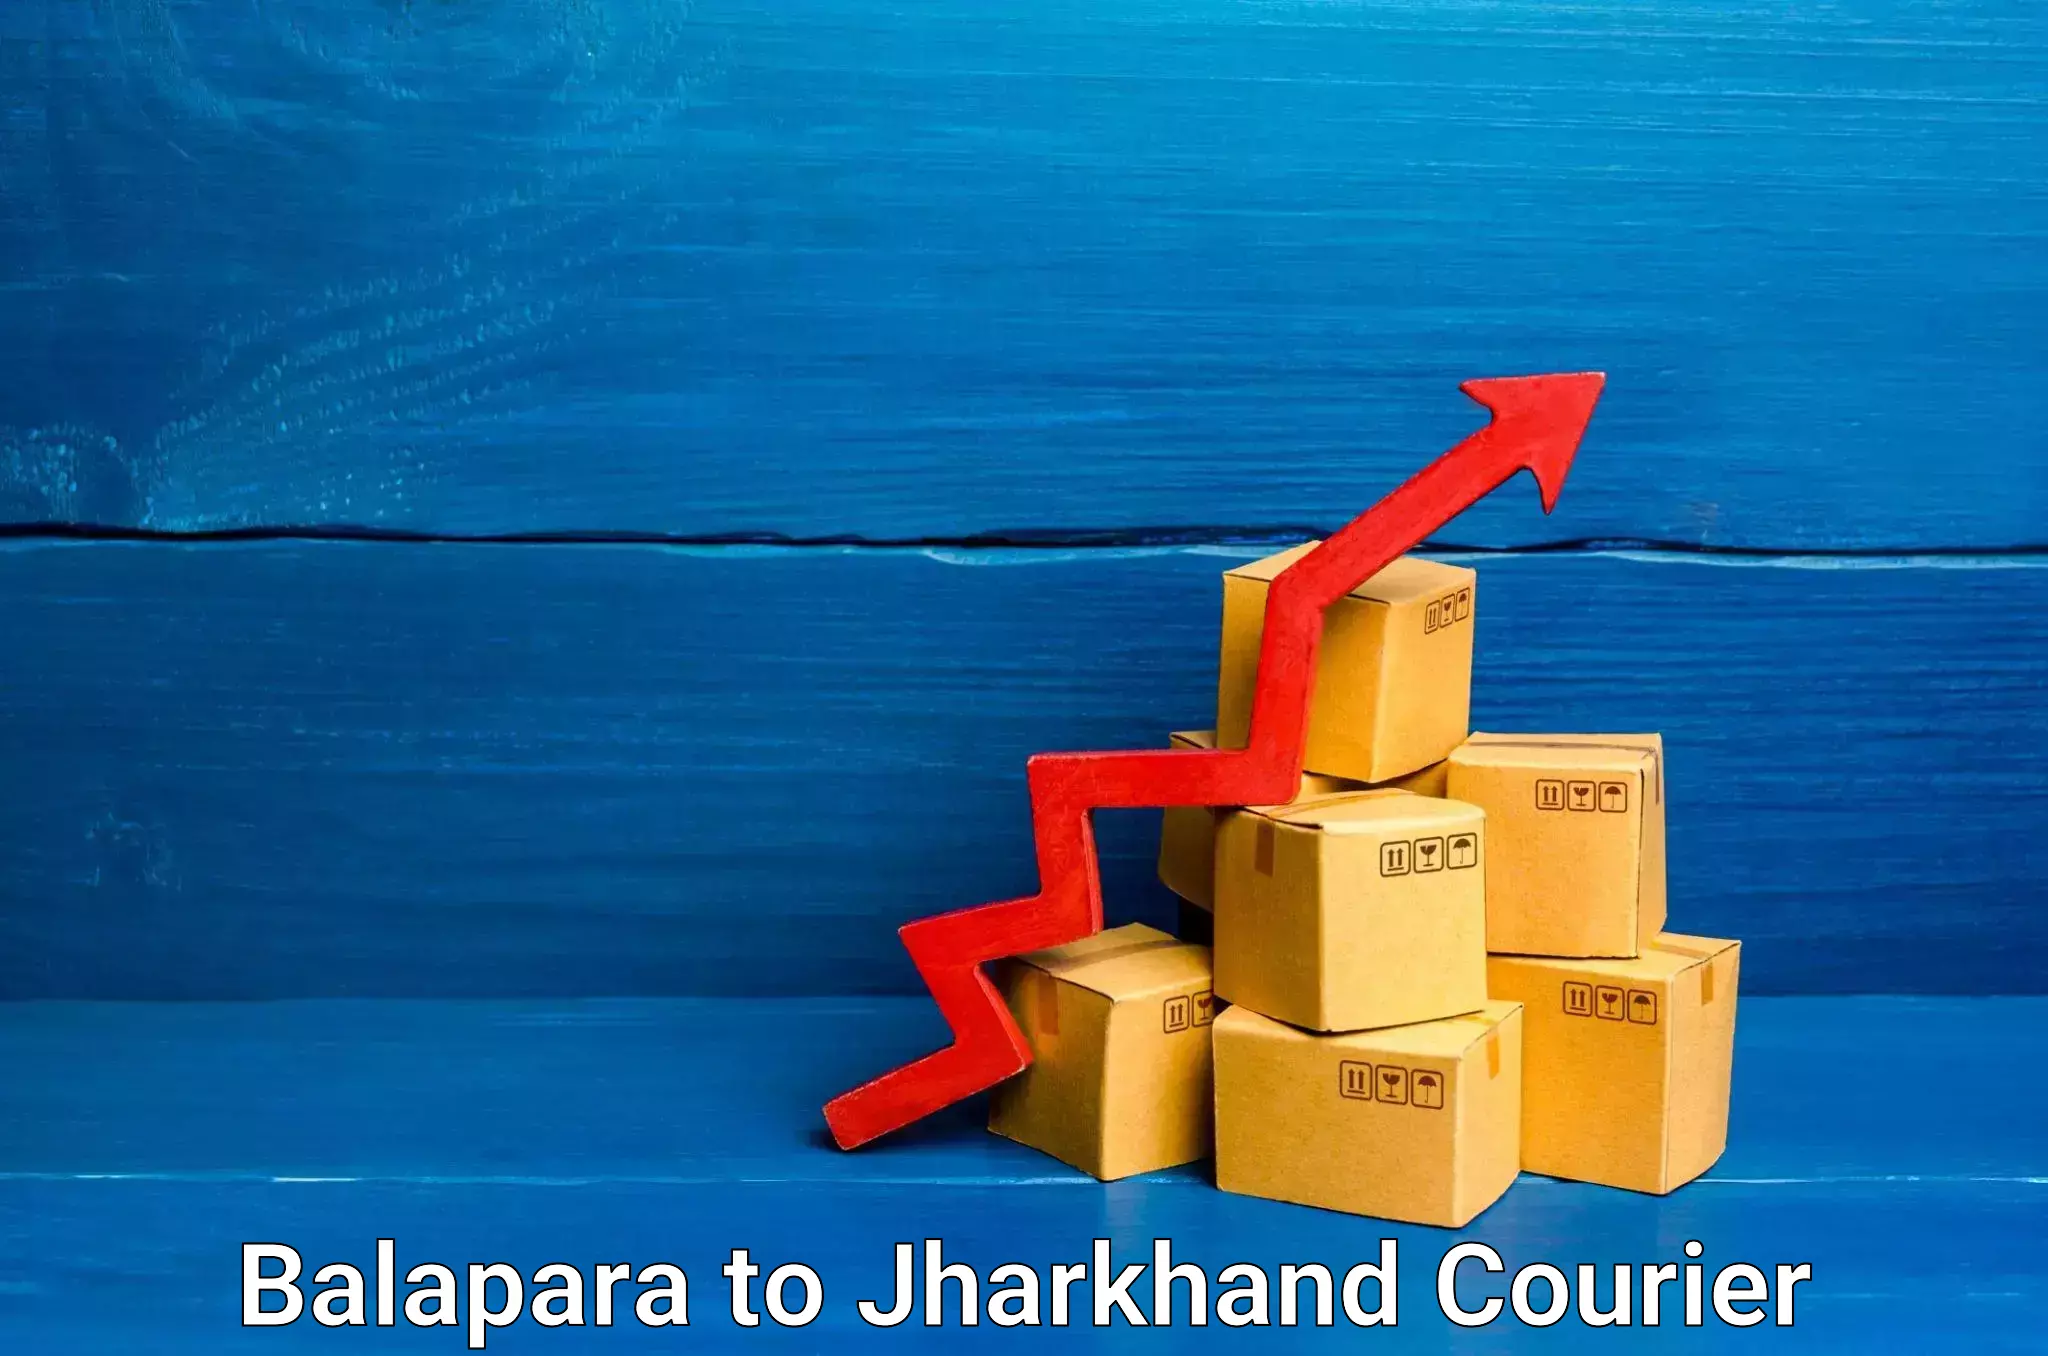 Express logistics service Balapara to Jharia